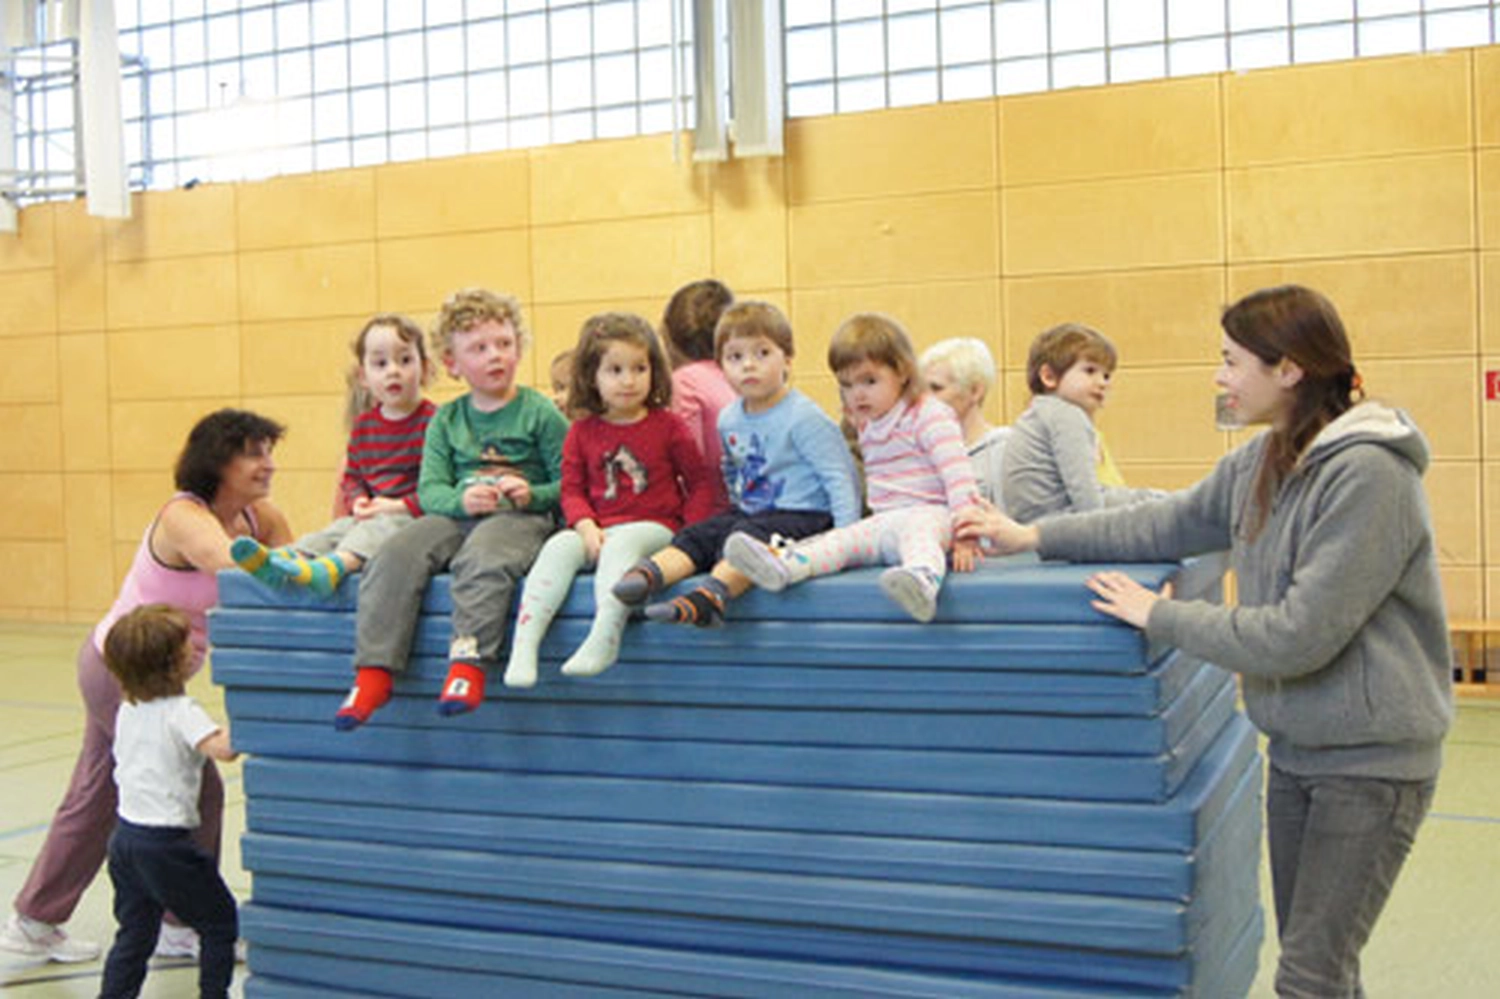 Tus Maccabi E.v Düsseldorf Eltern und Kinder beim Turnen